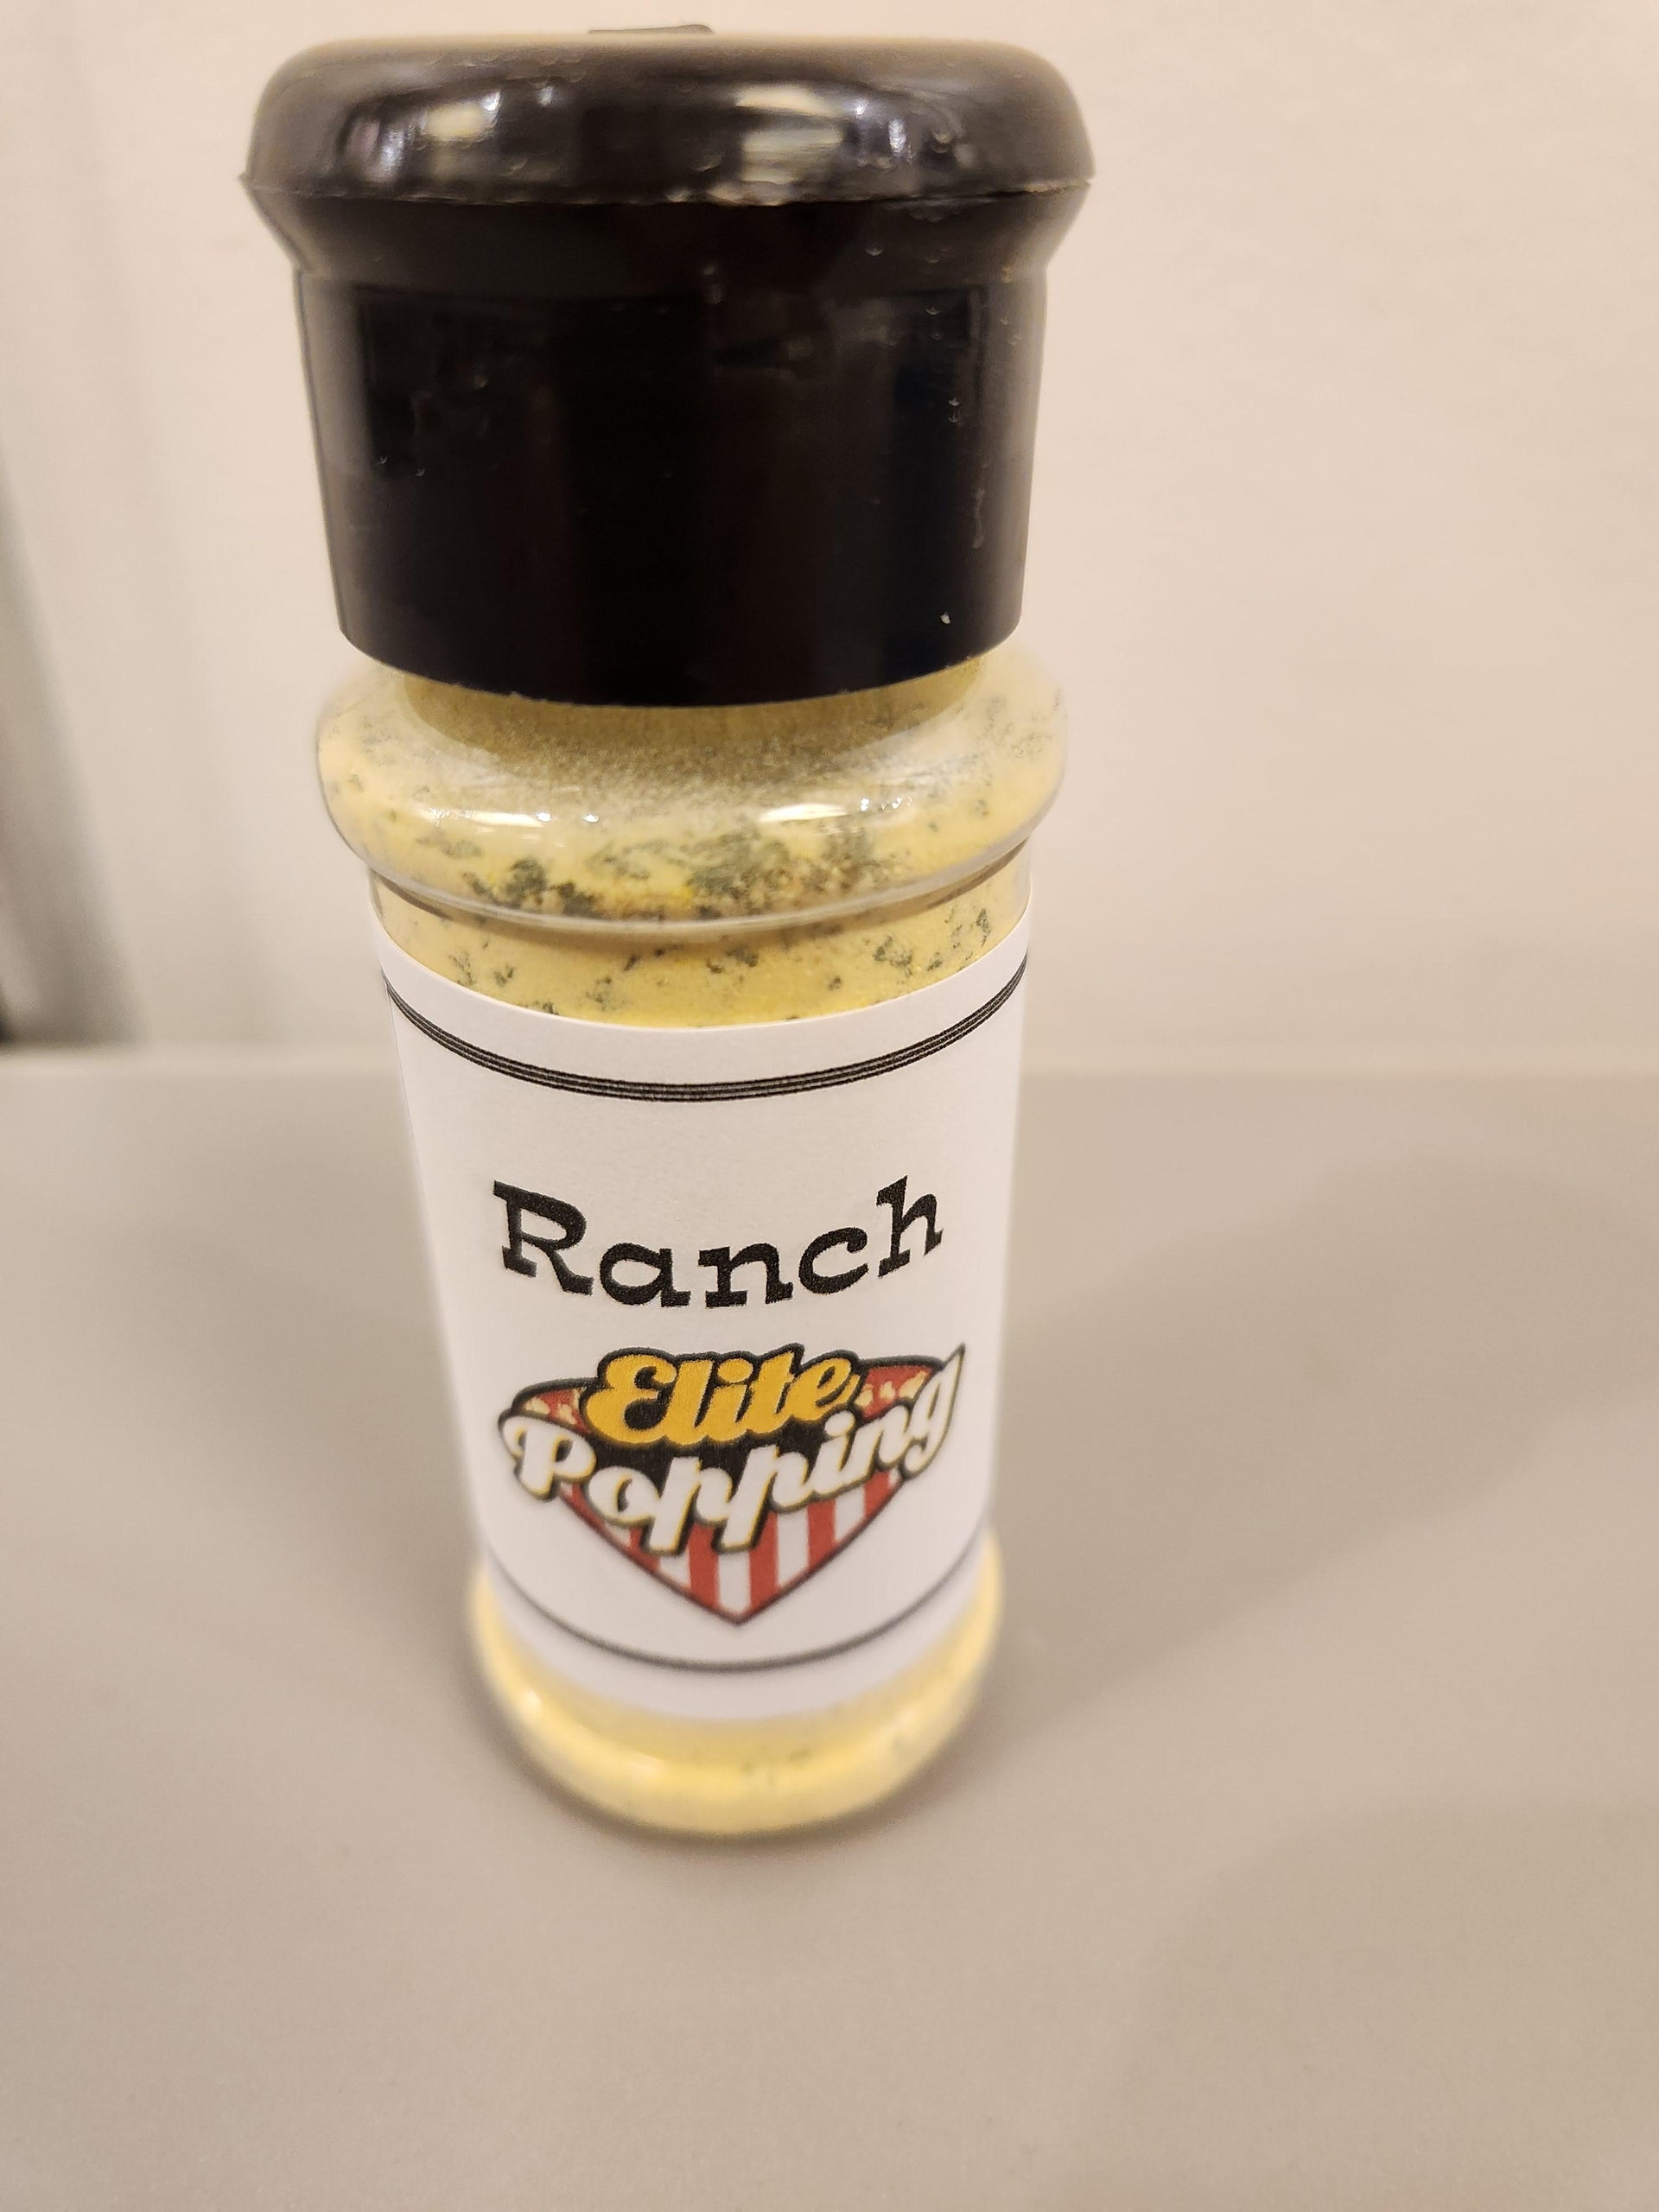 RedHot Ranch Seasoning